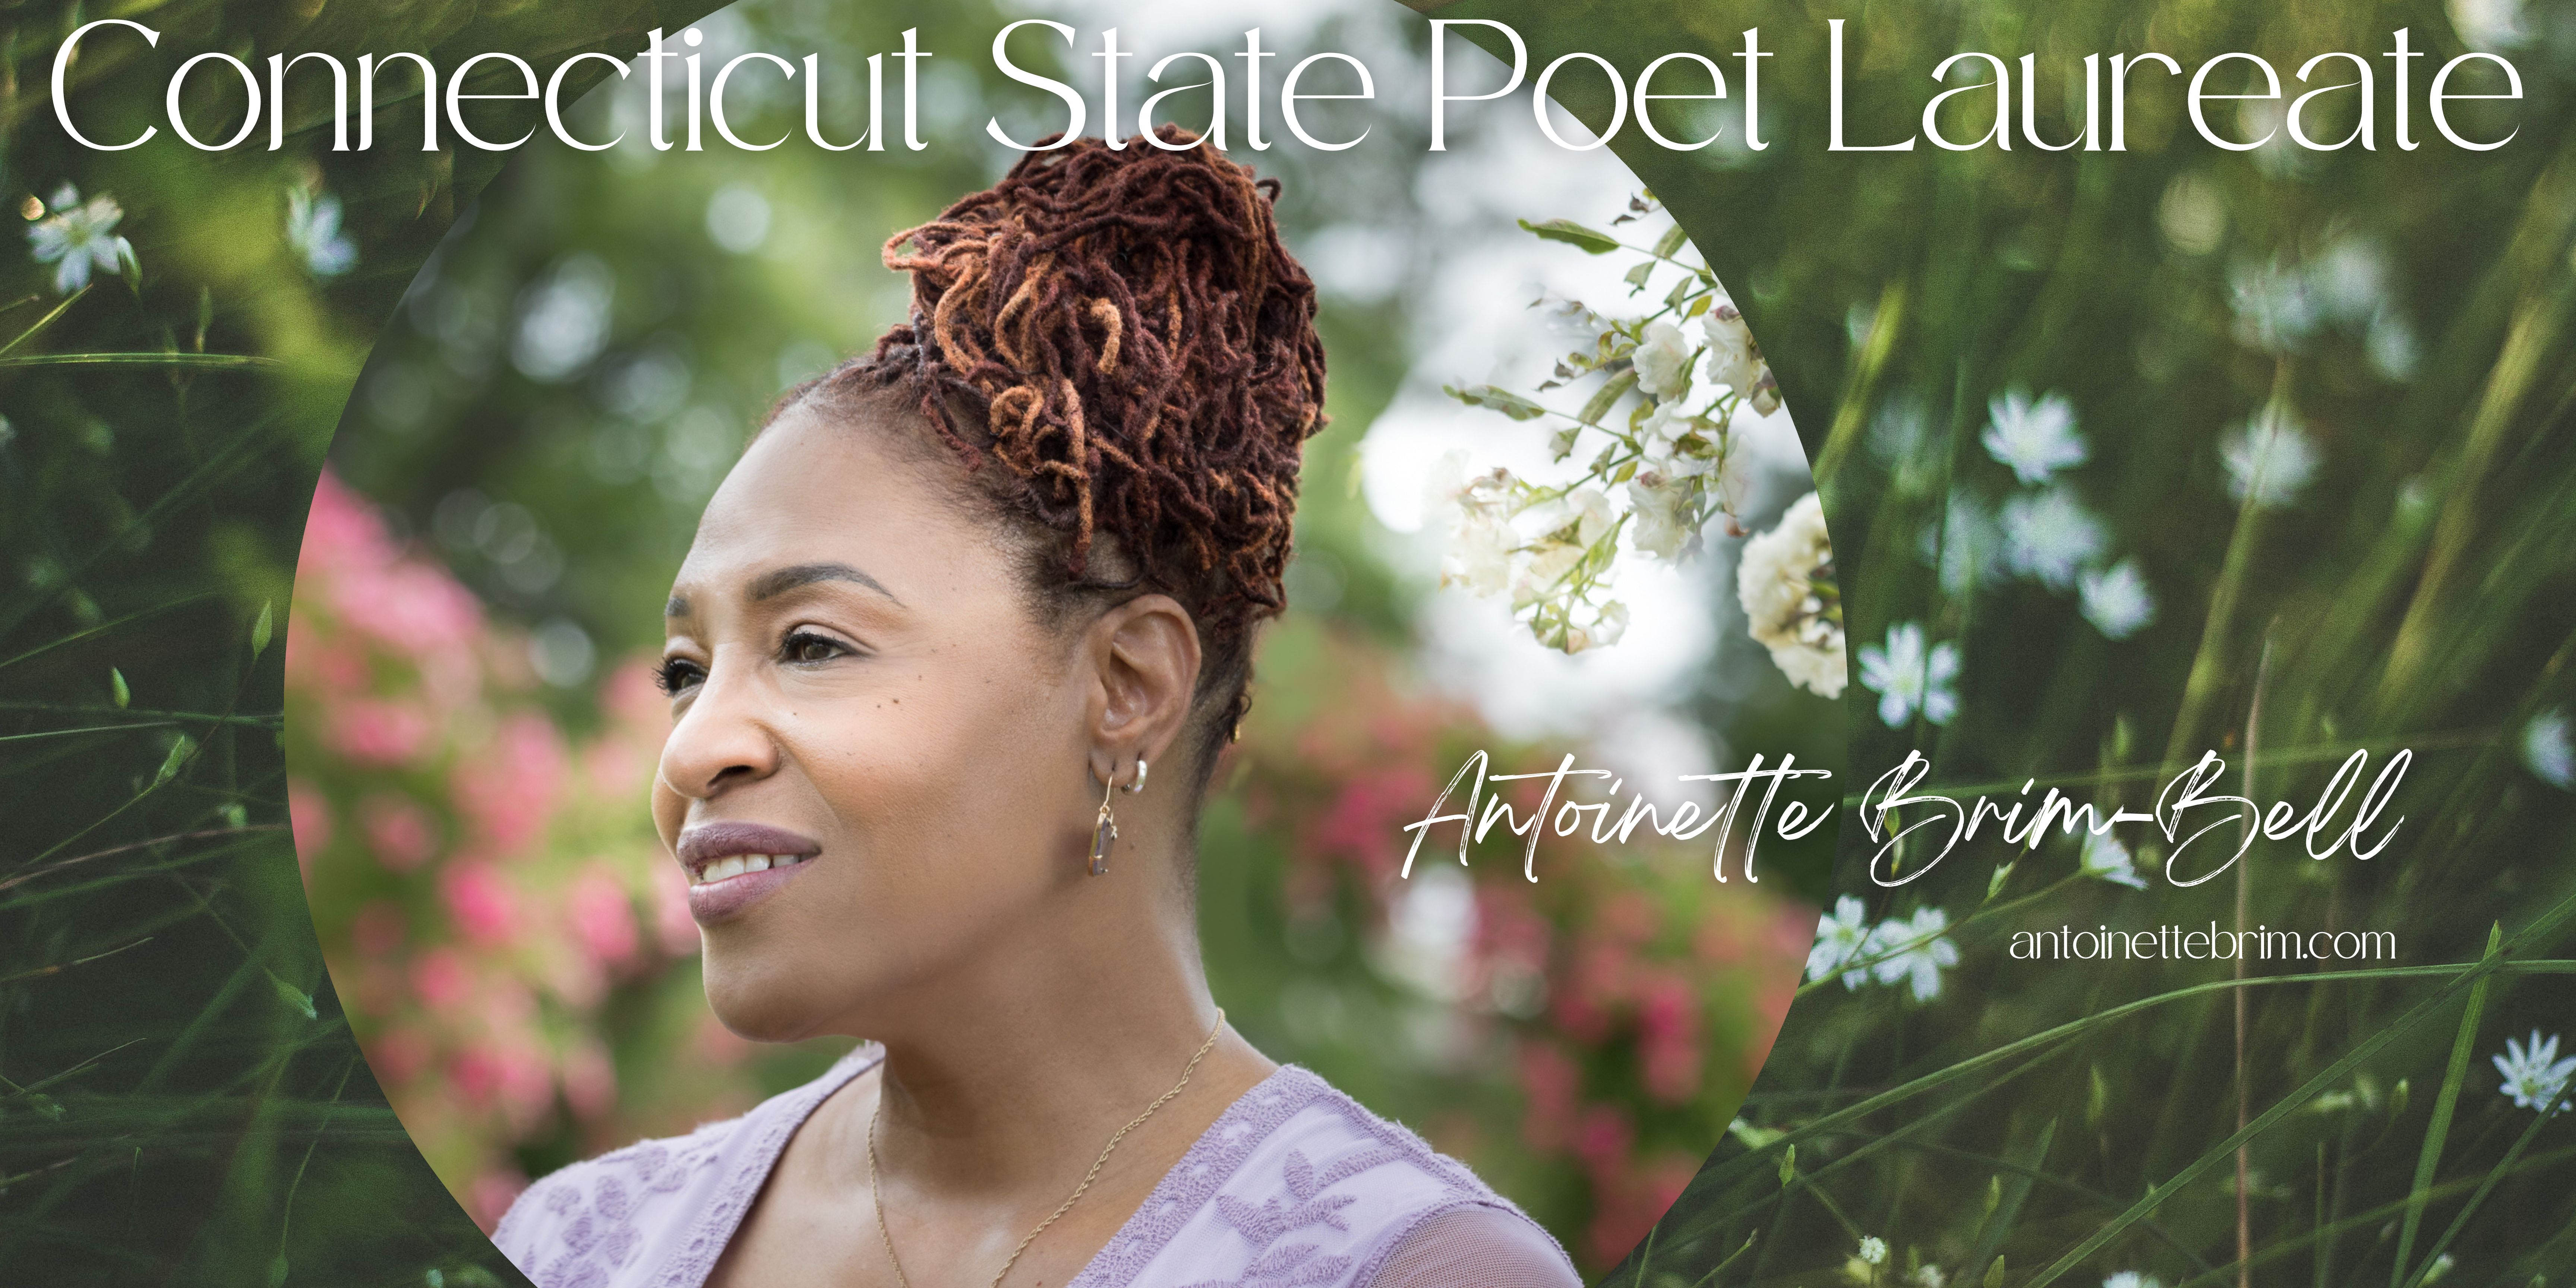 Connecticut State Poet Laureate